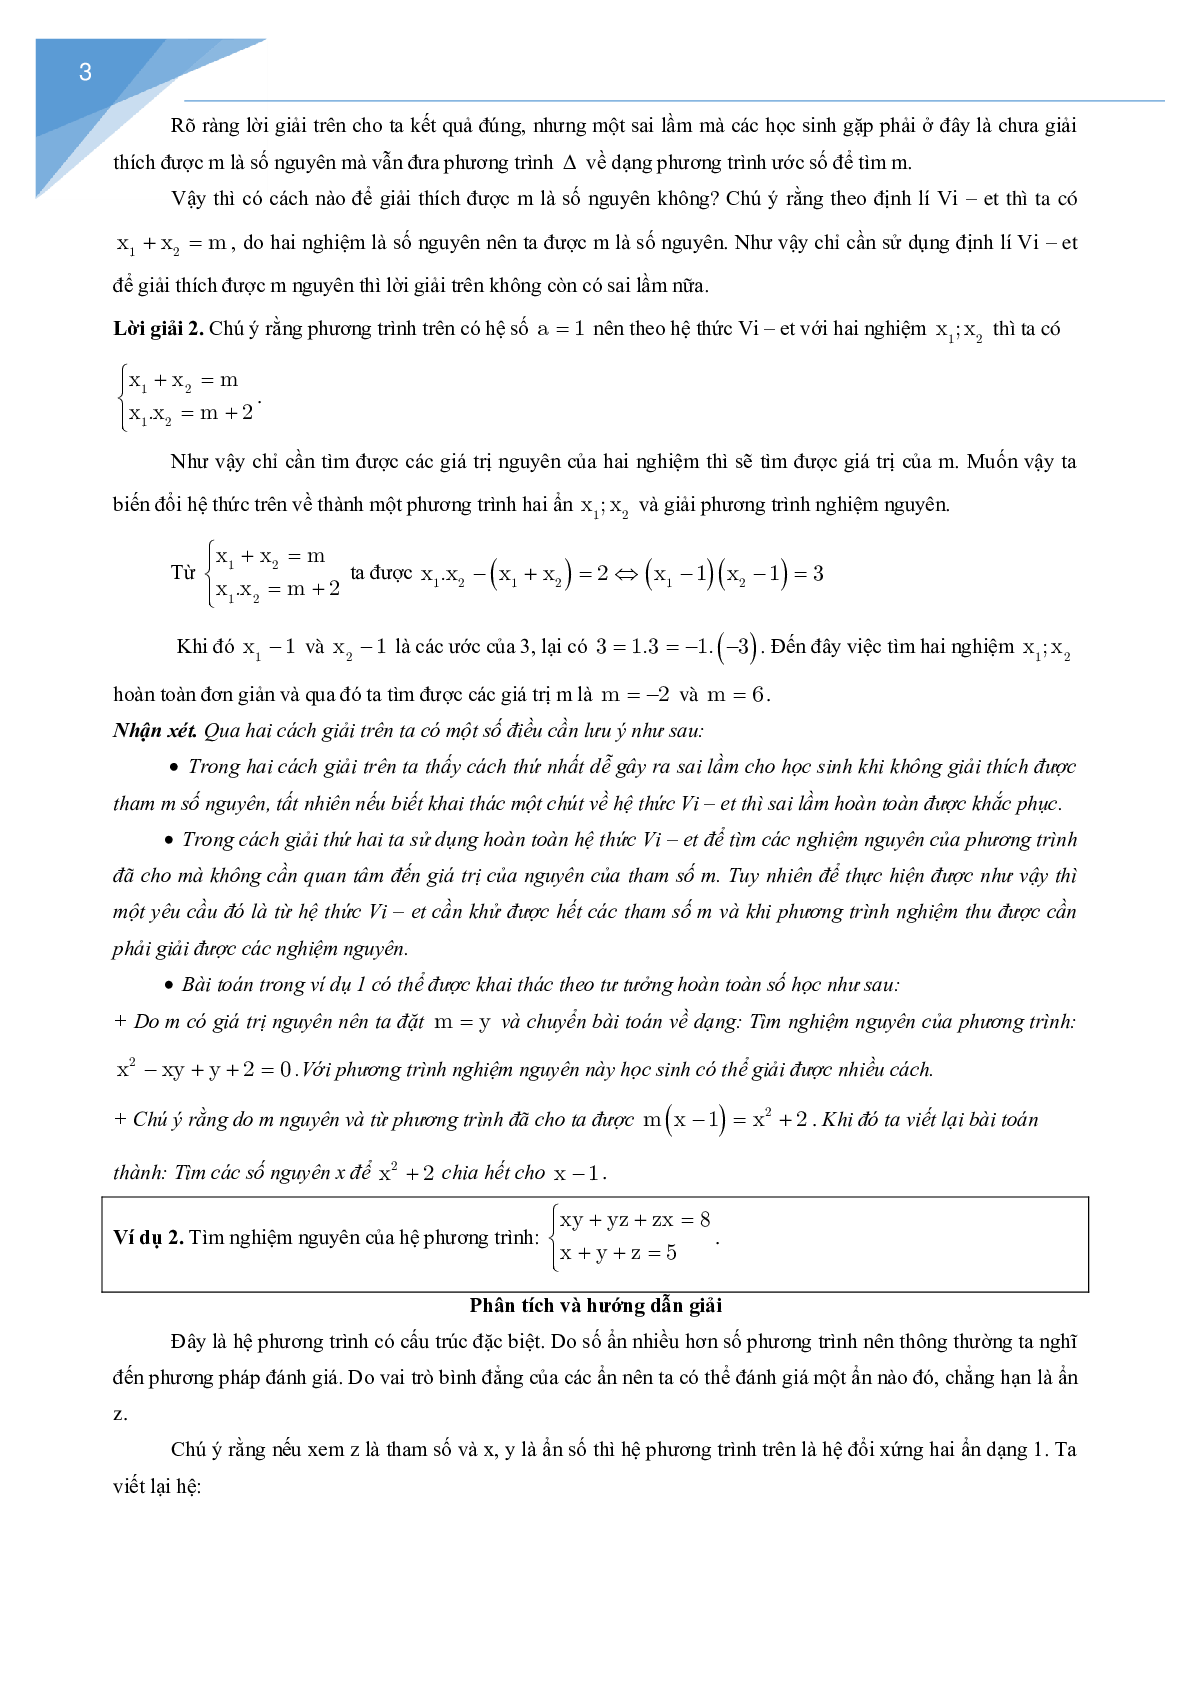 Vận dụng định lý Vi-et giải một số bài toán số học (trang 3)